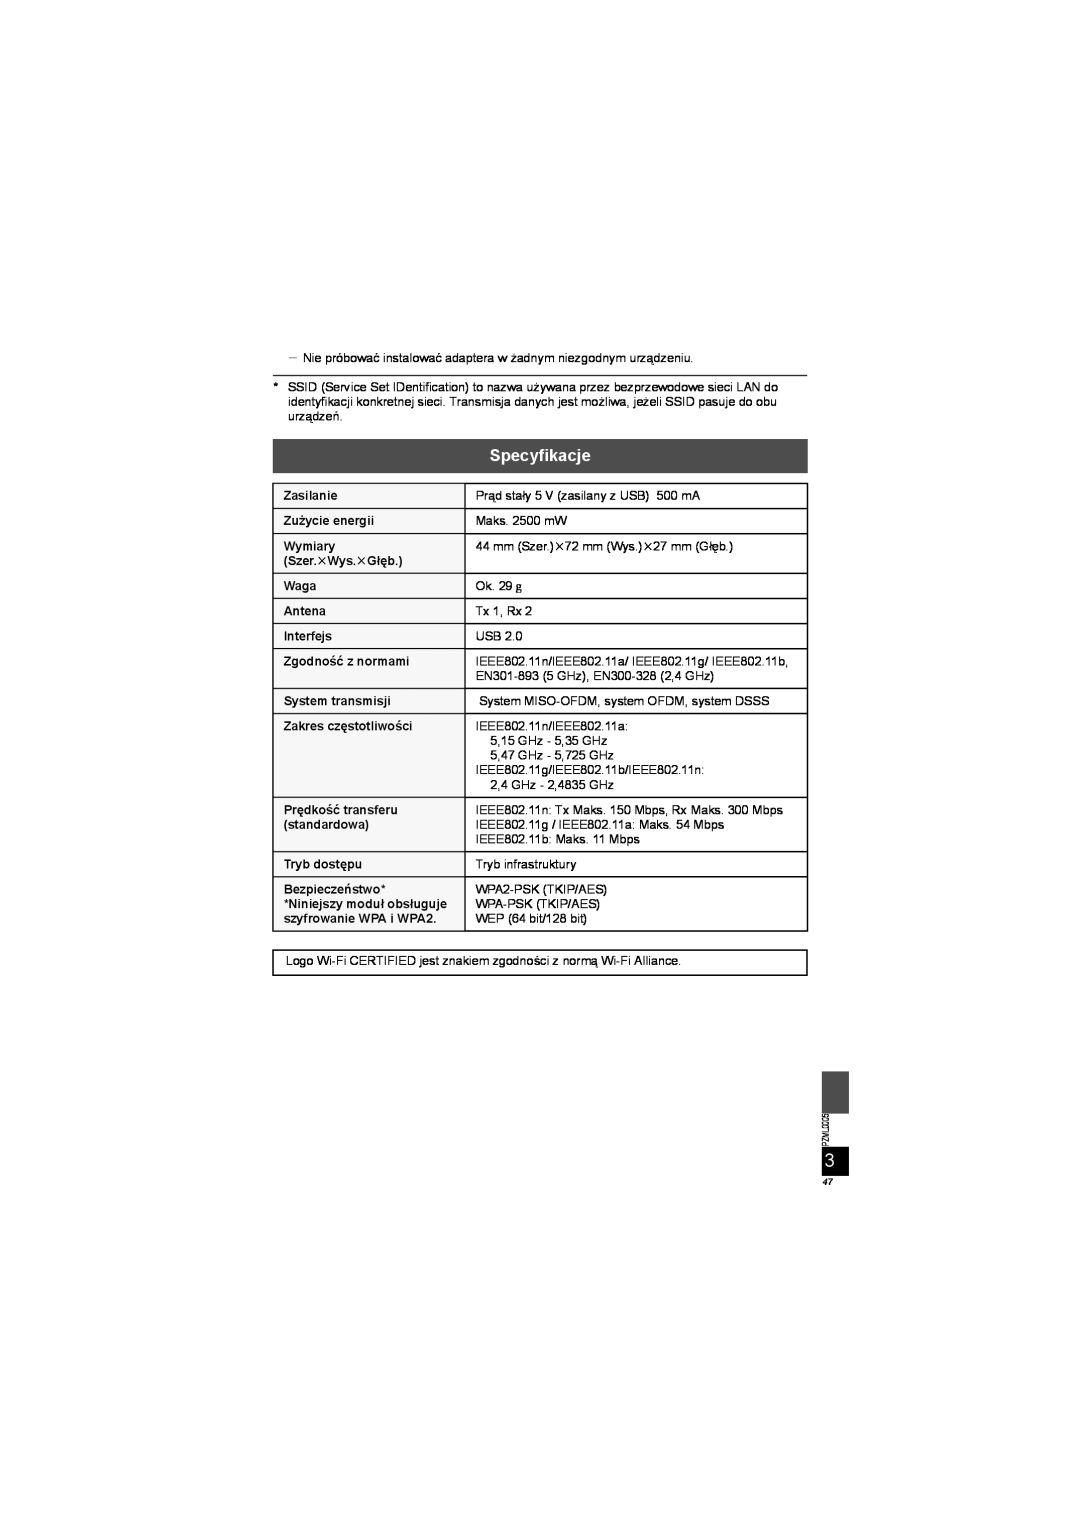 Panasonic DY-WL10 manual Specyfikacje, PZML0005 